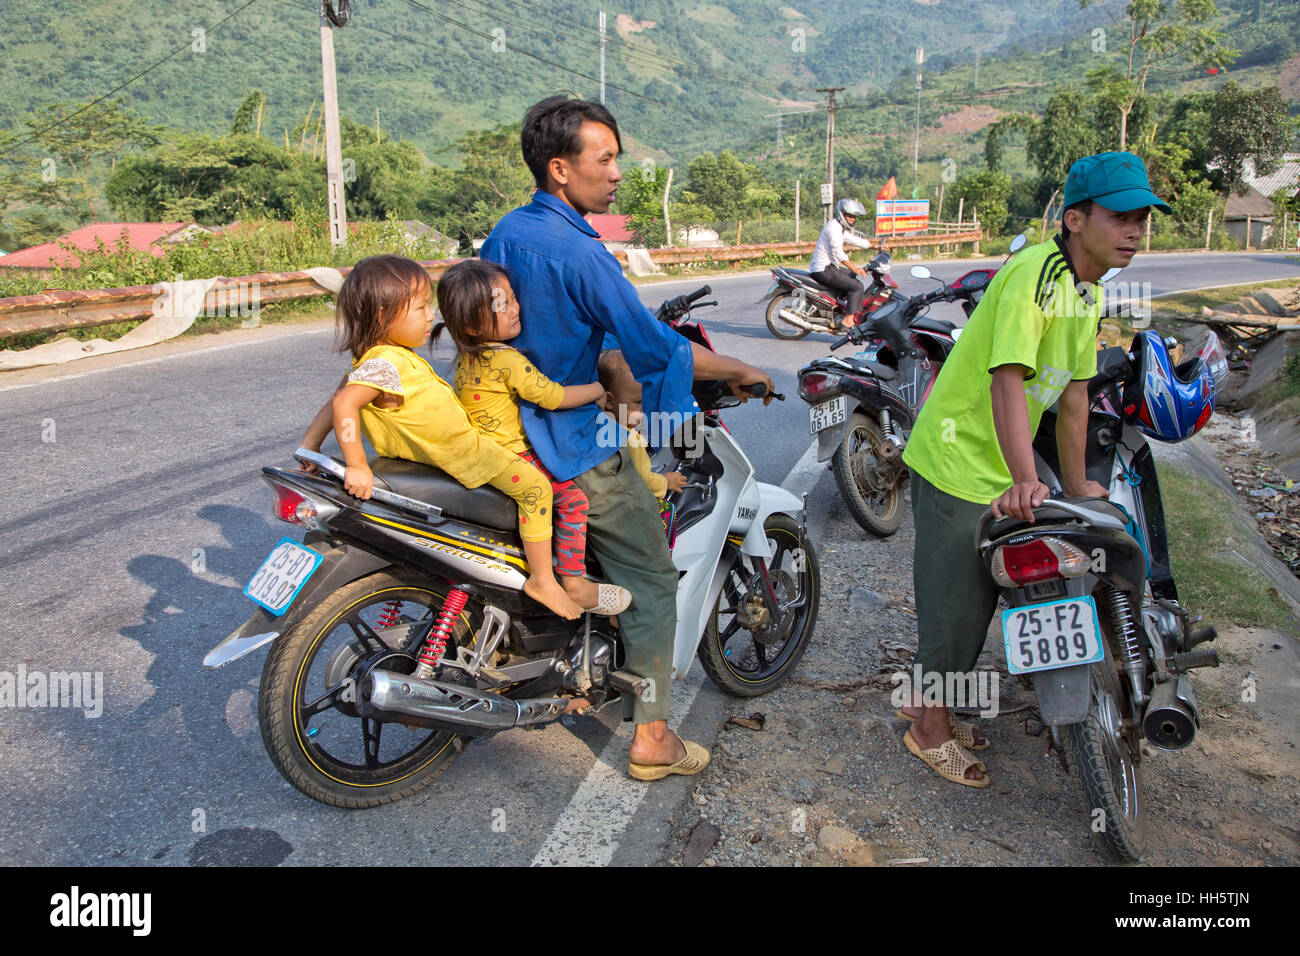 Vater den Transport von drei kleinen Kindern, ländlichen Highway angehalten, ein Gespräch mit Bauernmarkt, Yamaha Sirius RC Motorrad. Stockfoto